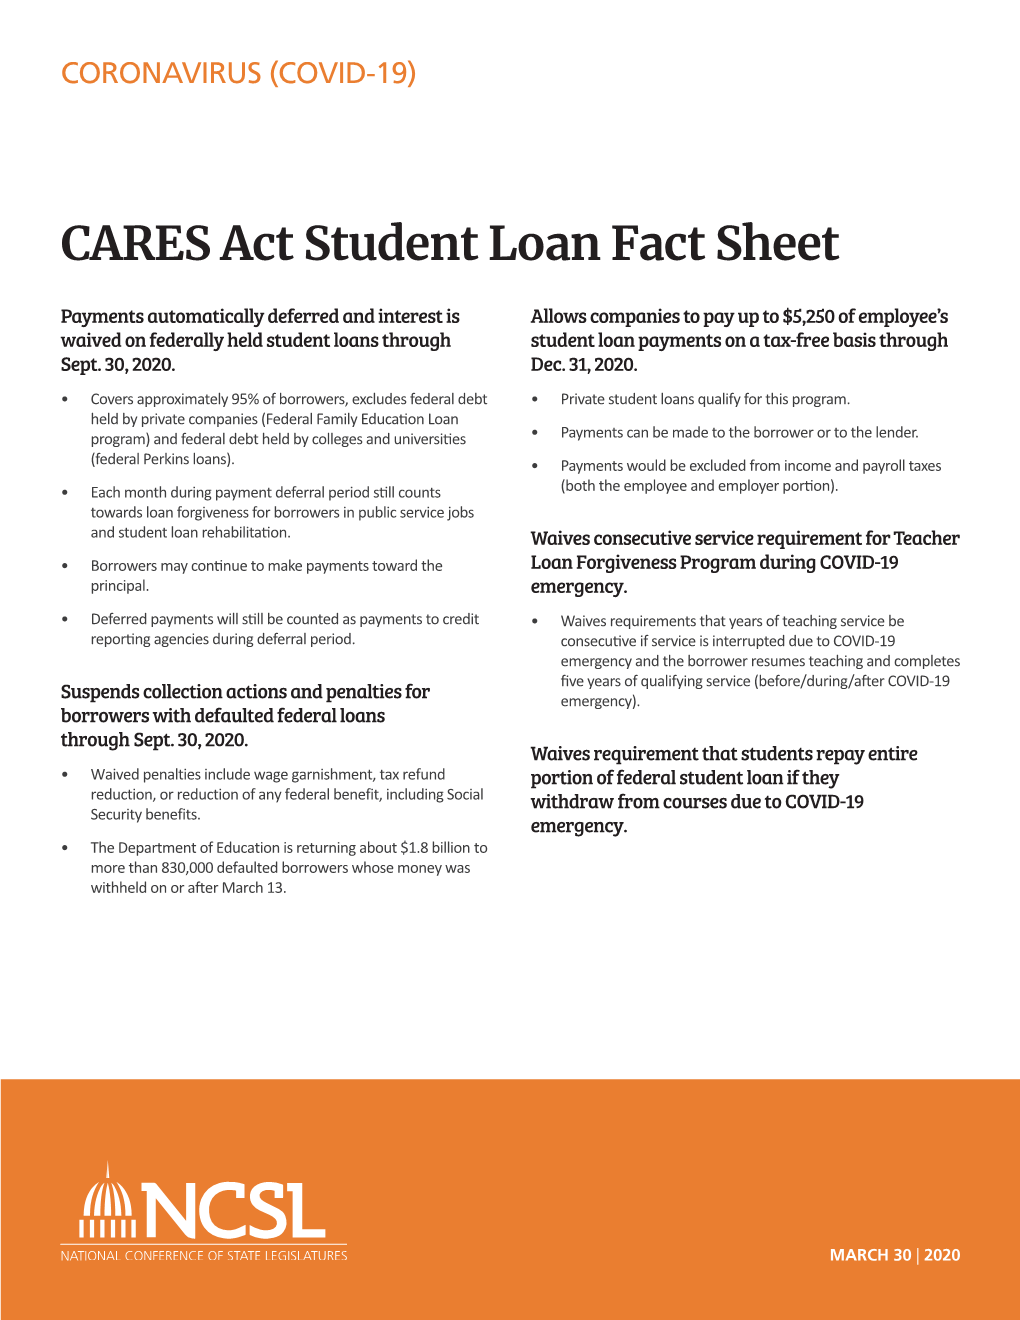 CARES Act Student Loan Fact Sheet |